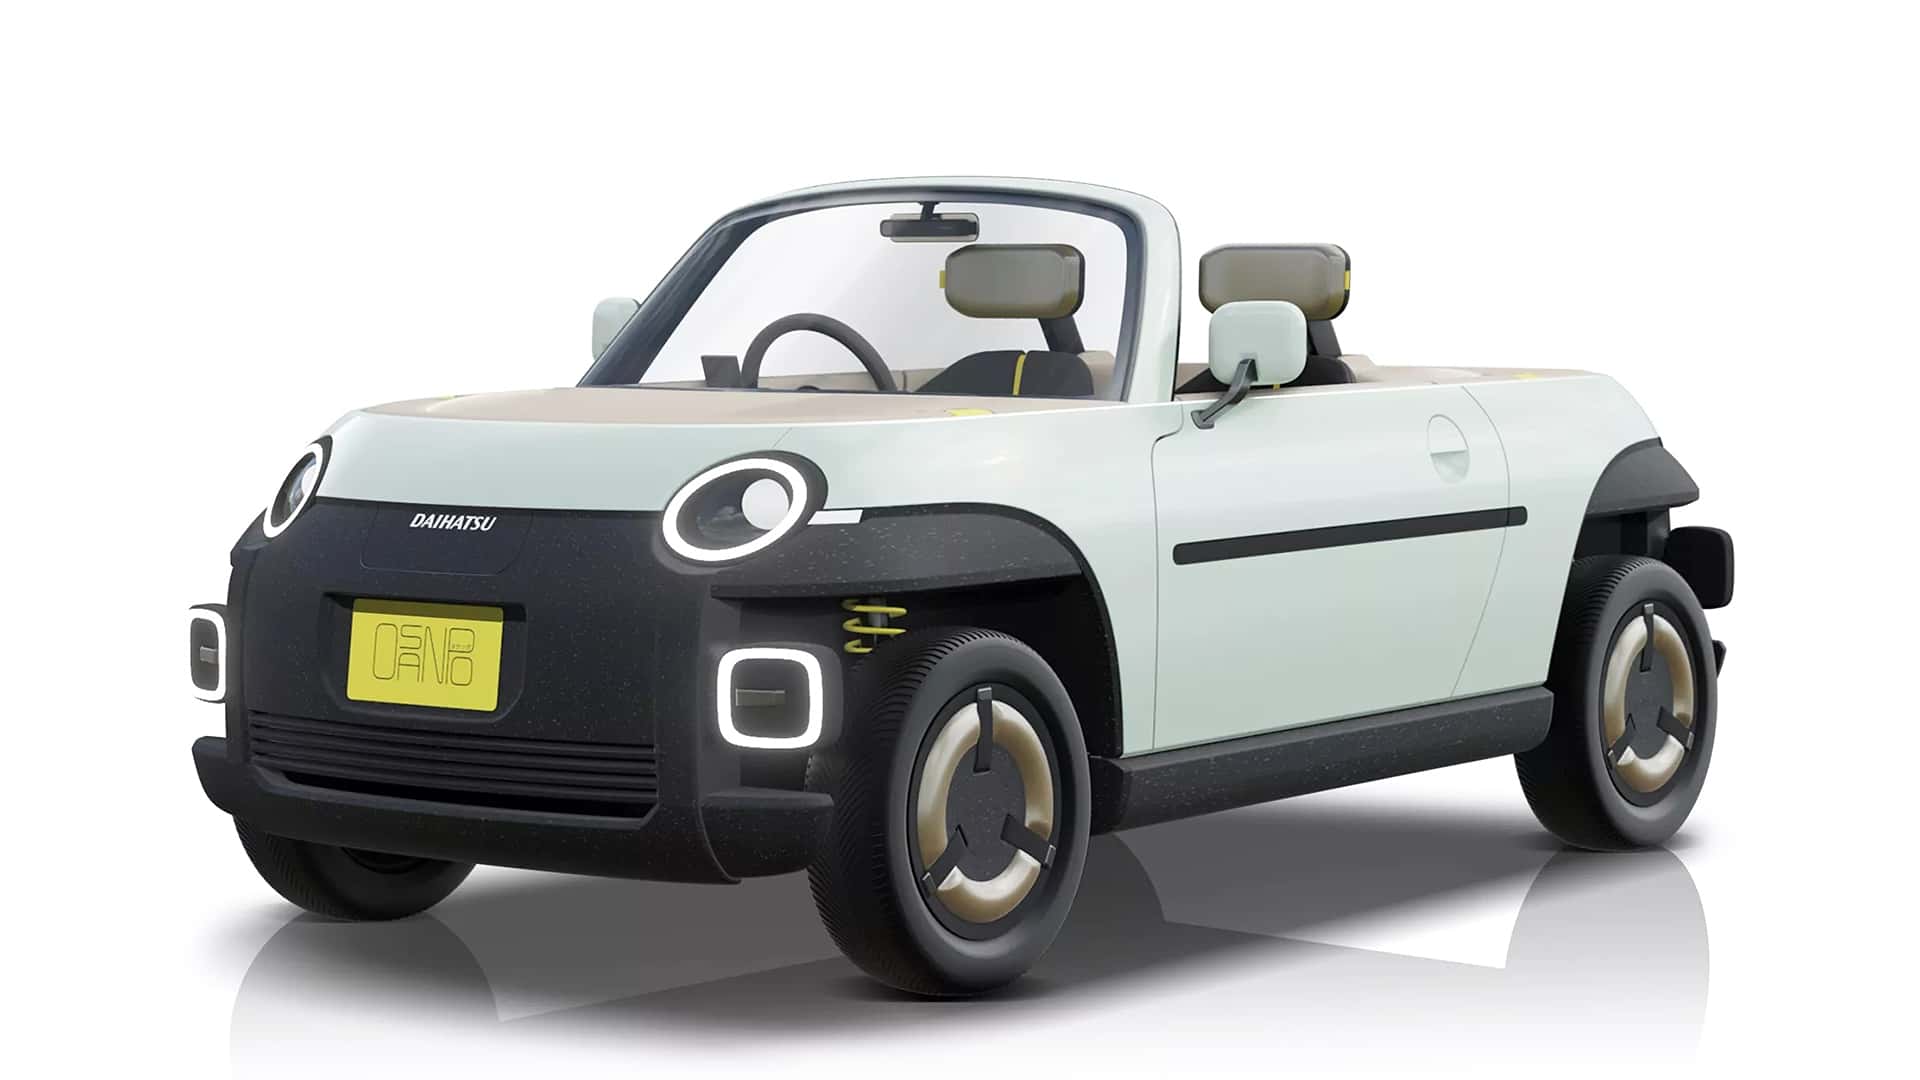 daihatsu's new ev concepts include delightful compact roadster, box truck